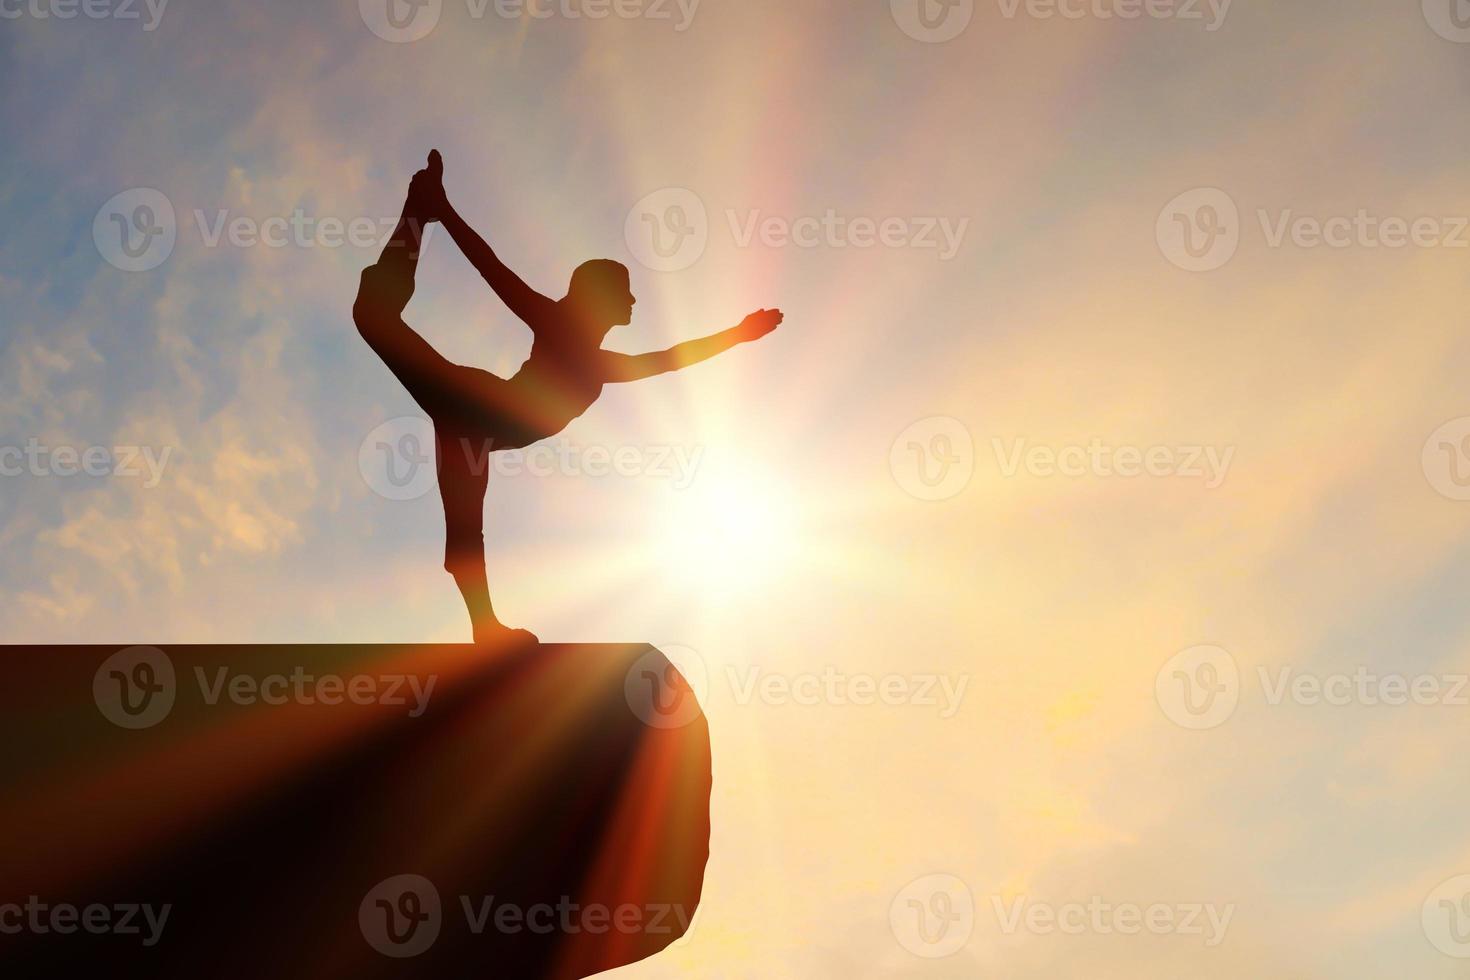 les femmes de silhouette de portrait font du yoga sur la pierre de silhouette avec un coucher de soleil orange calme. photo